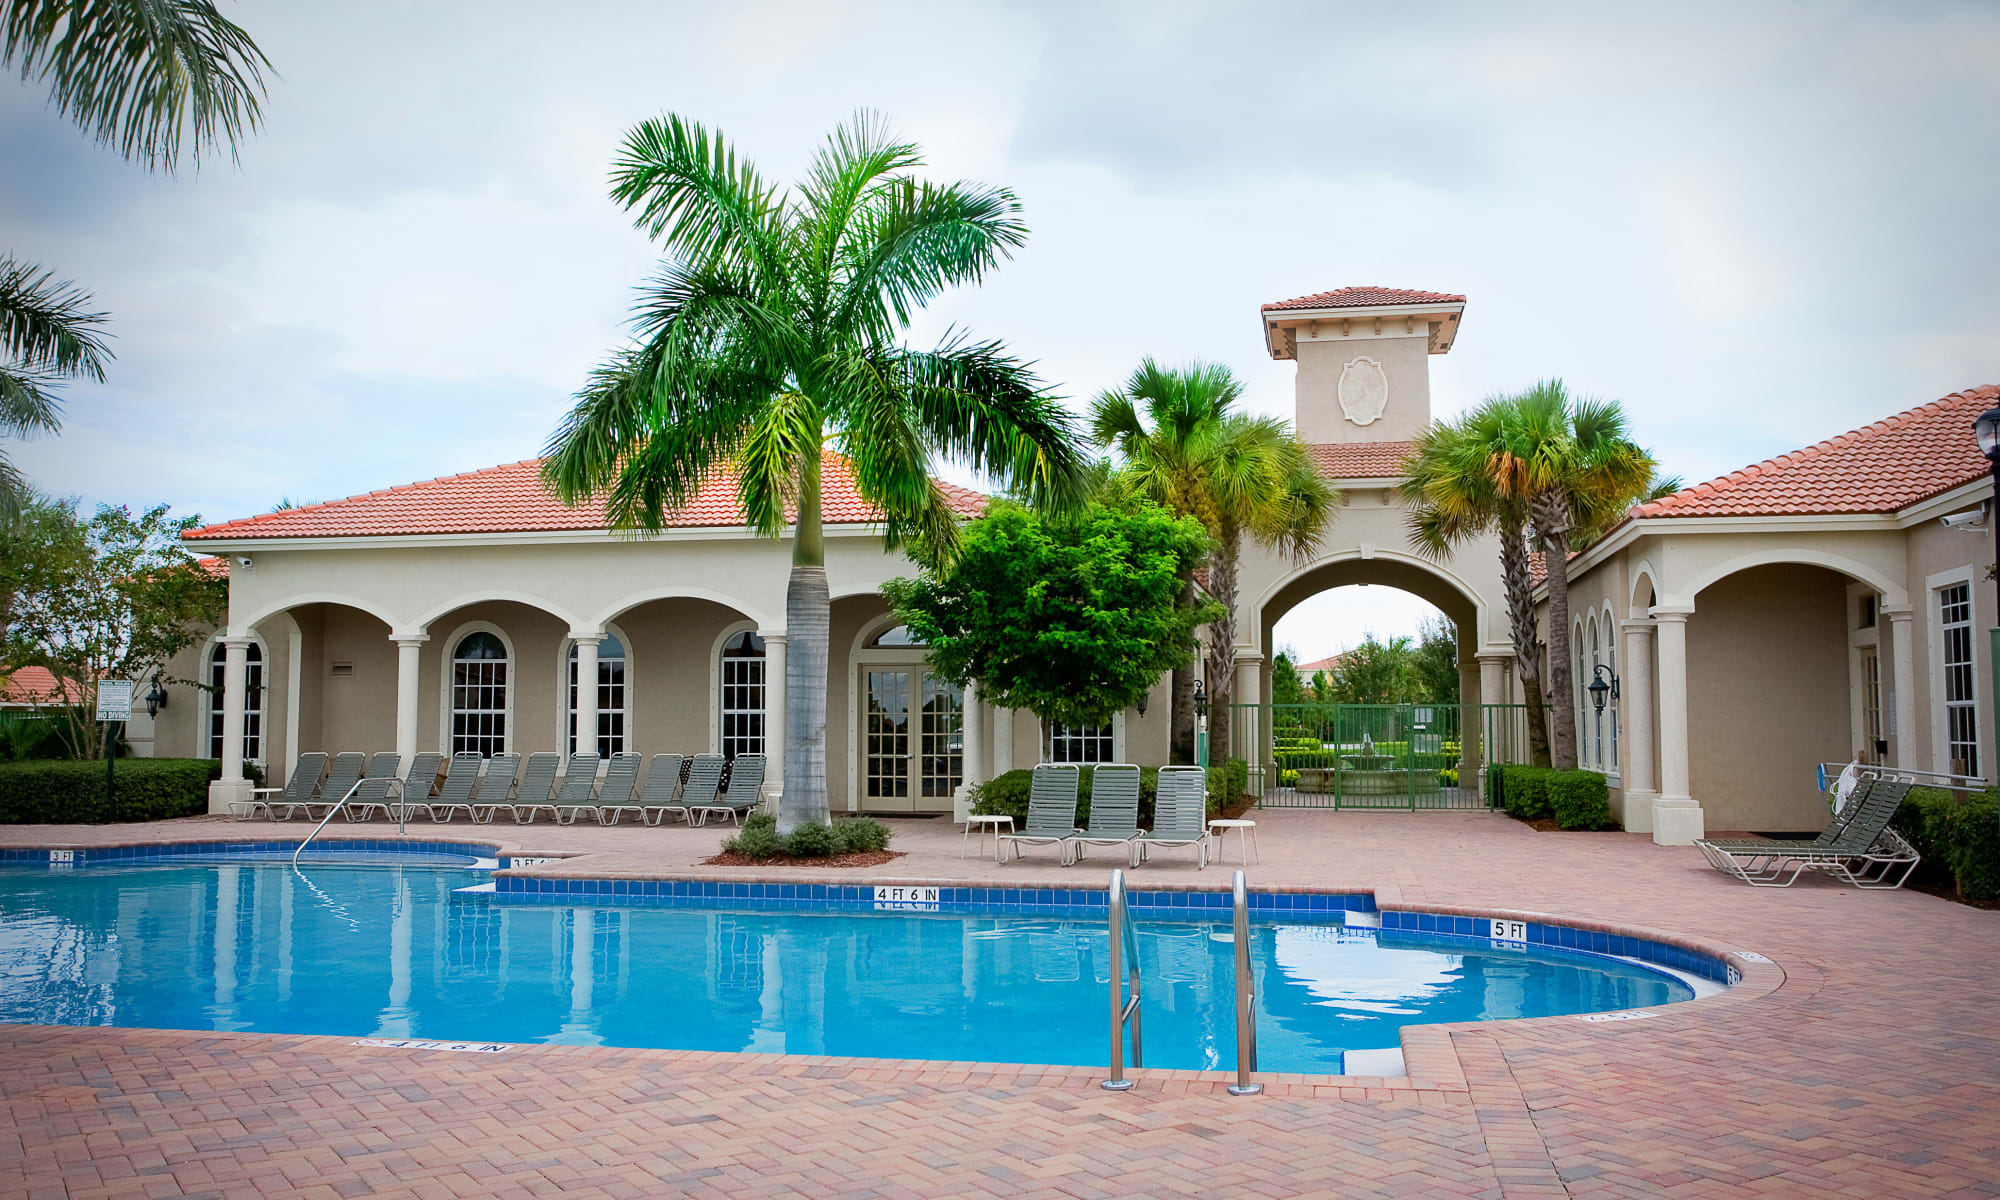 Green Cay Village apartments in Boynton Beach, Florida